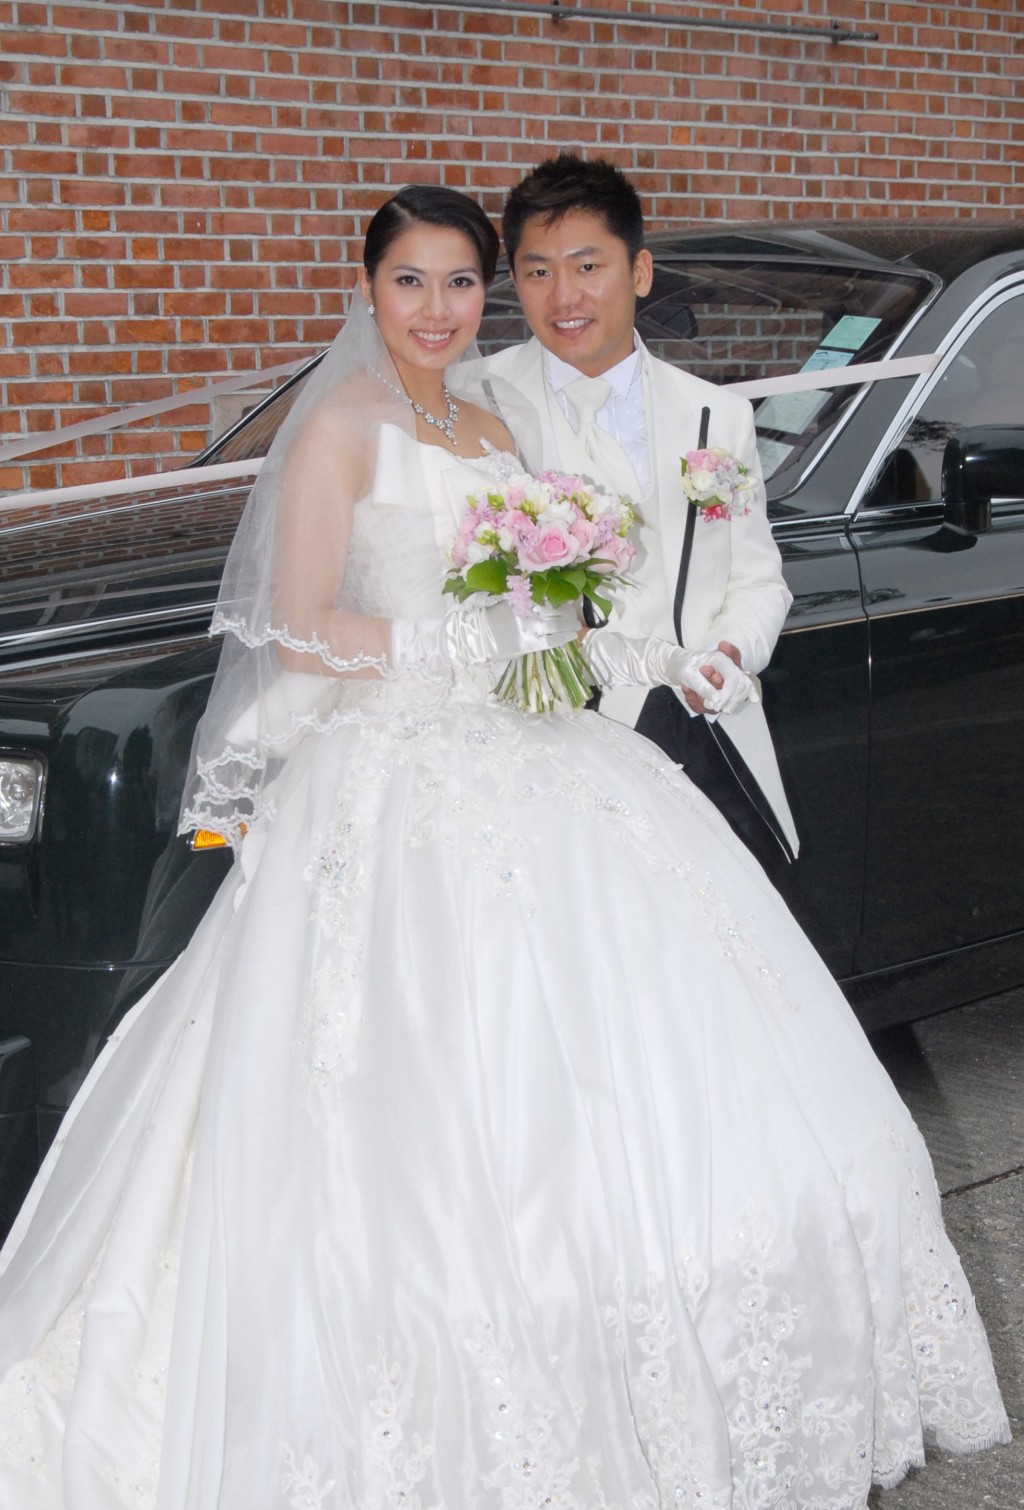 可嵐在歌唱事業發展起步期就奉子成婚，與尤子威結婚。